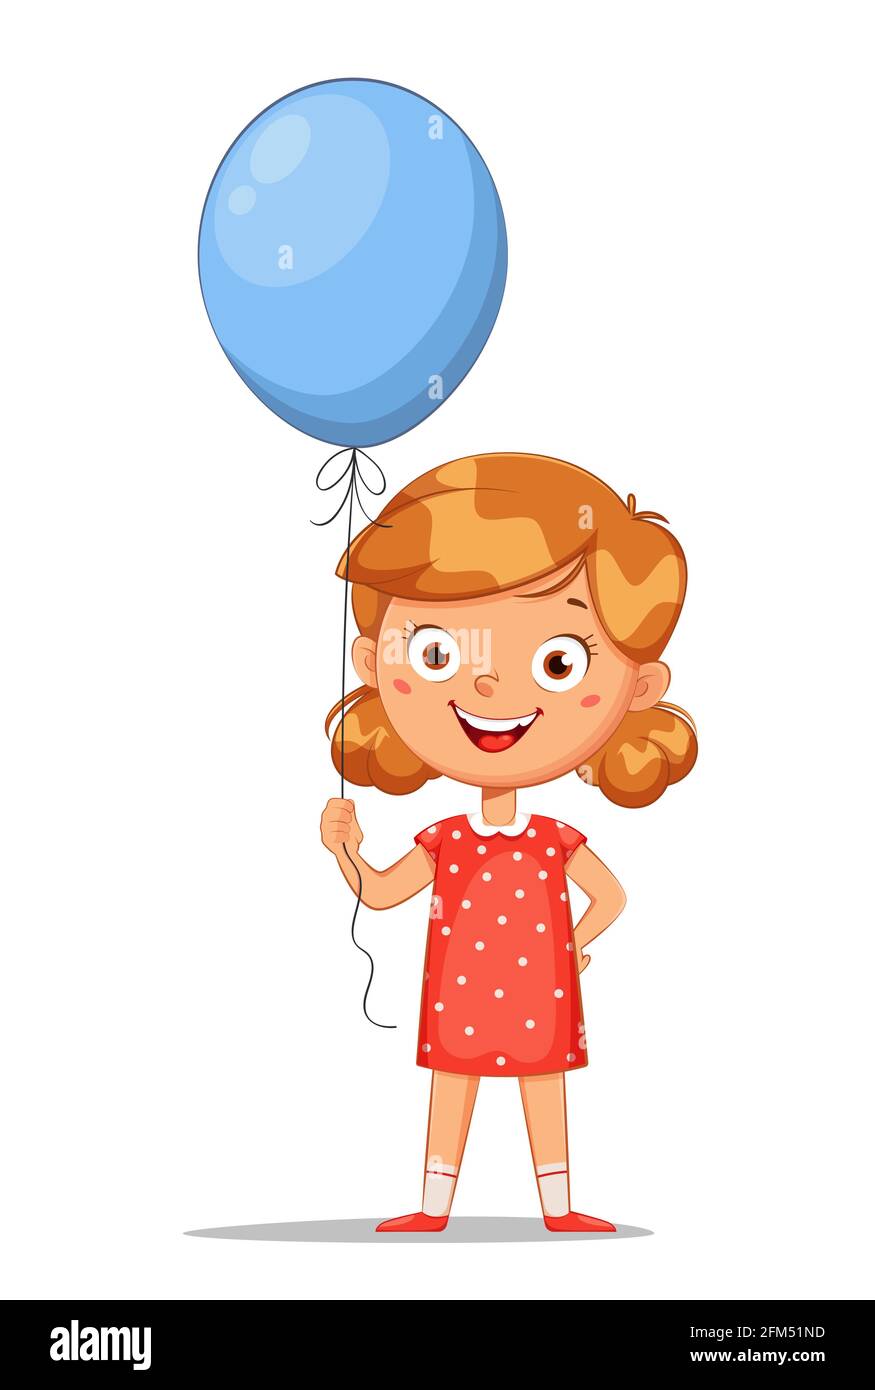 Bonne journée pour les enfants. Jolie petite fille avec ballon bleu,  personnage de dessin animé gai. Illustration vectorielle sur fond blanc  Image Vectorielle Stock - Alamy